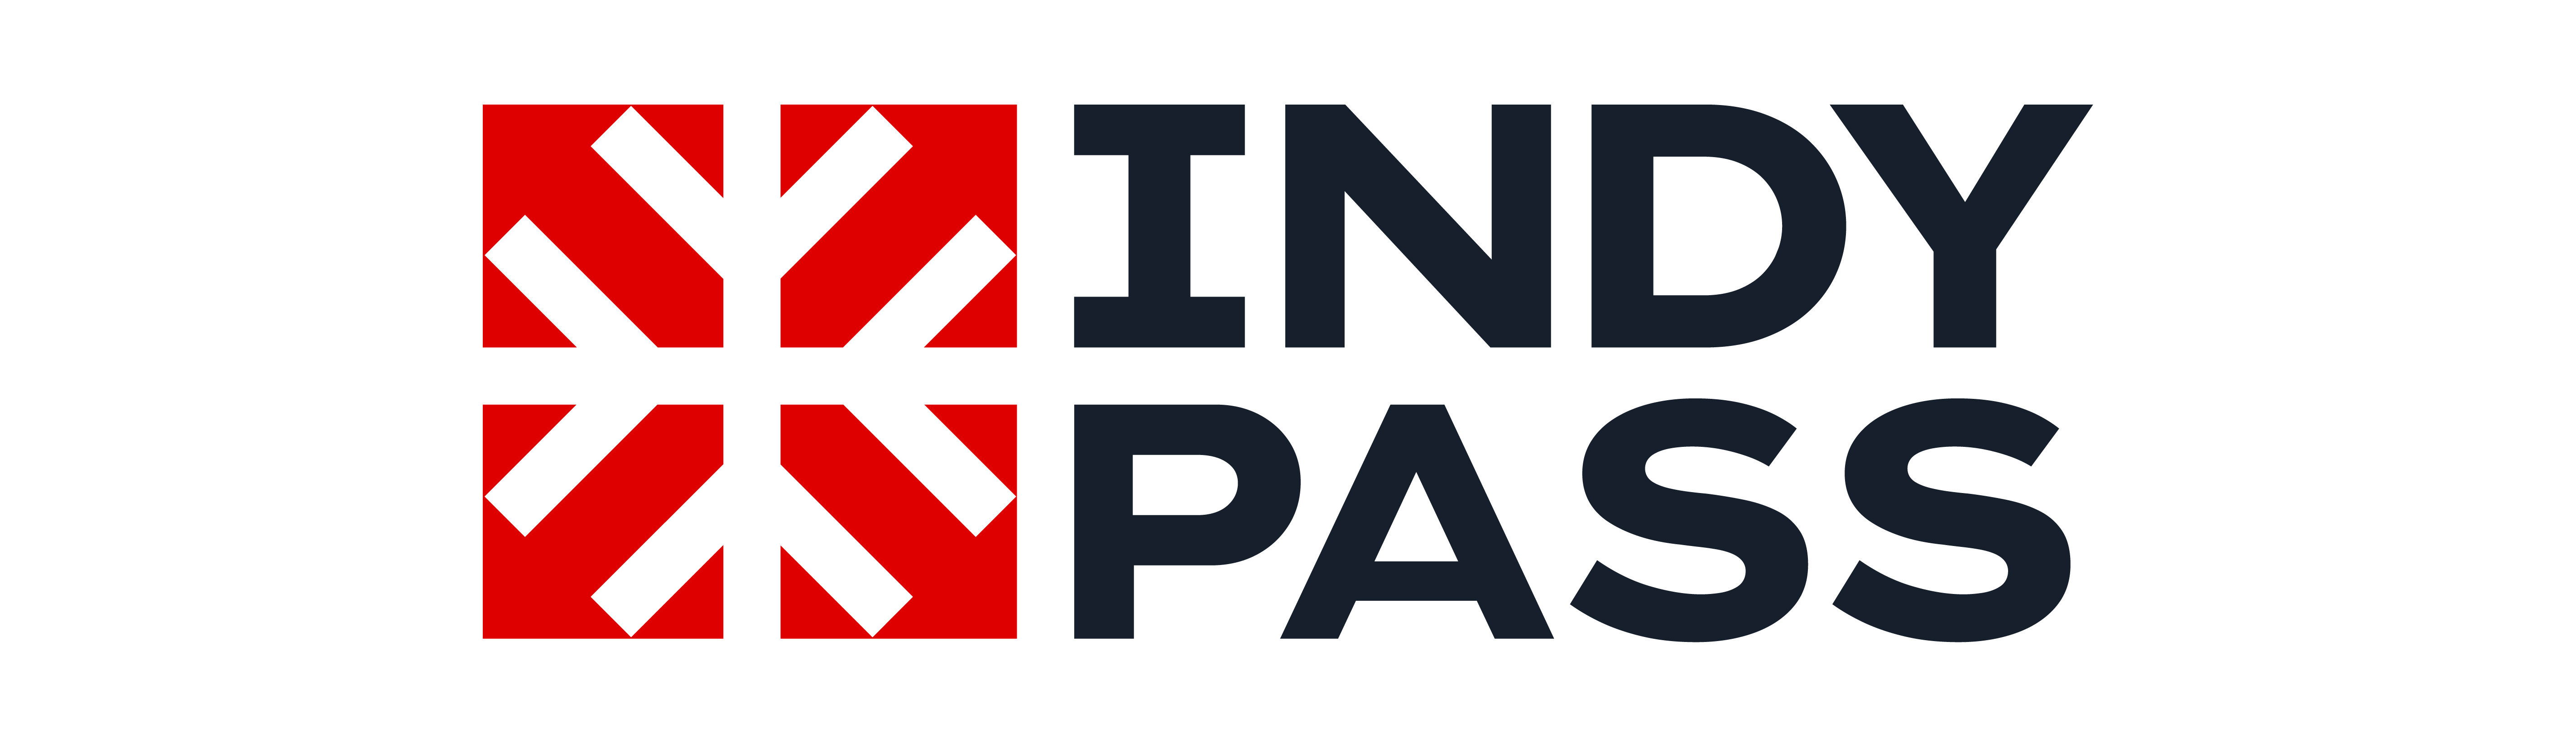 Indy Pass desktop image